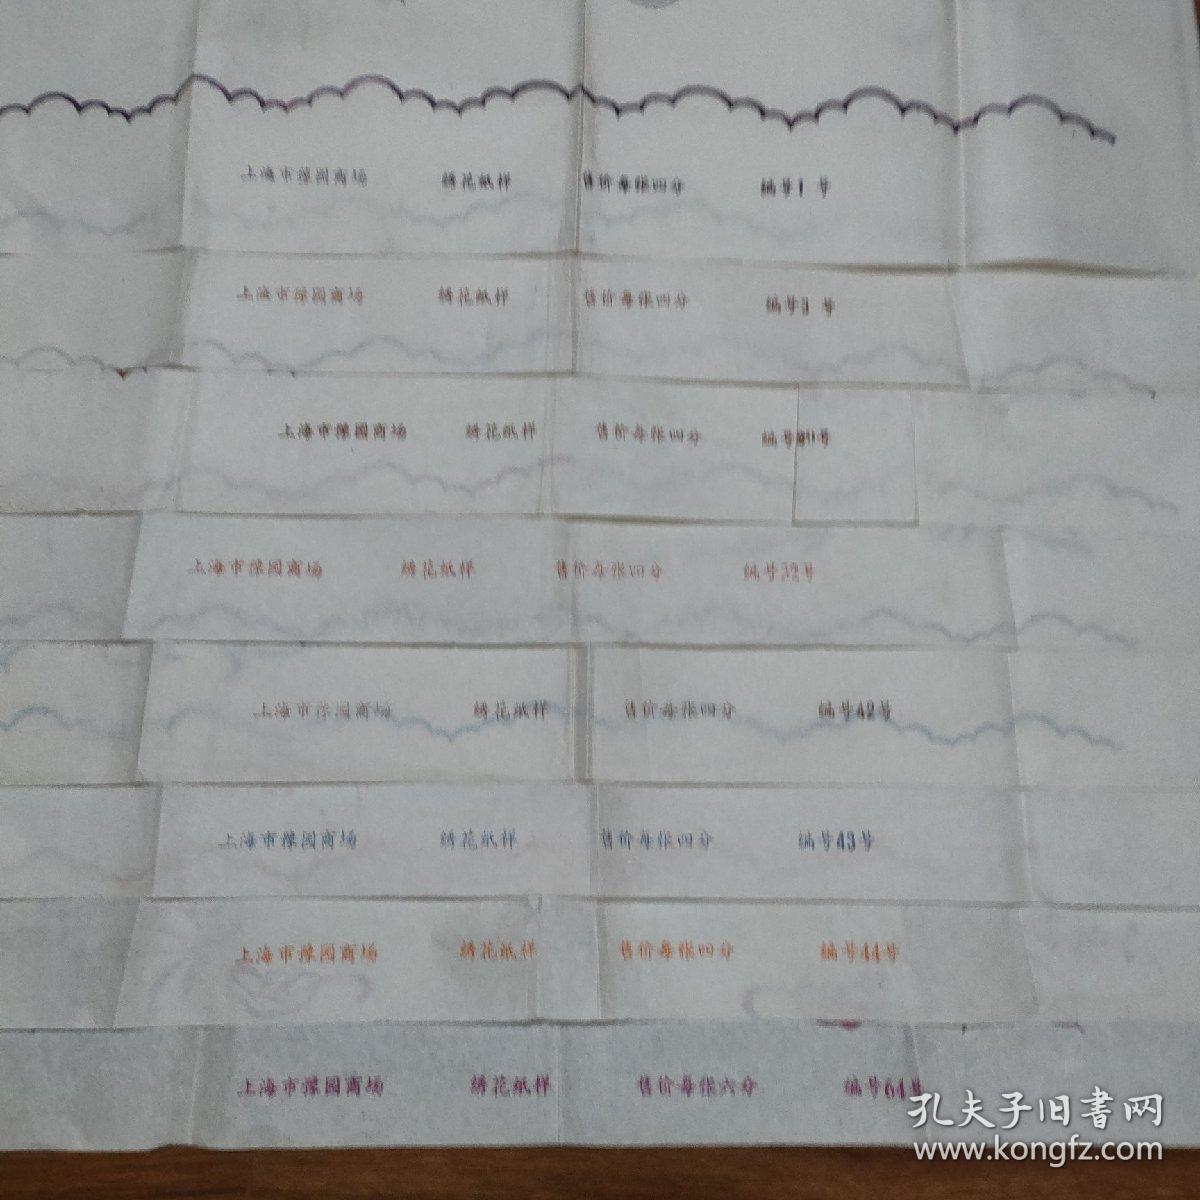 上海豫园商场绣花纸样（8张合售，编号1、3、29、32、42、43、44、64号）